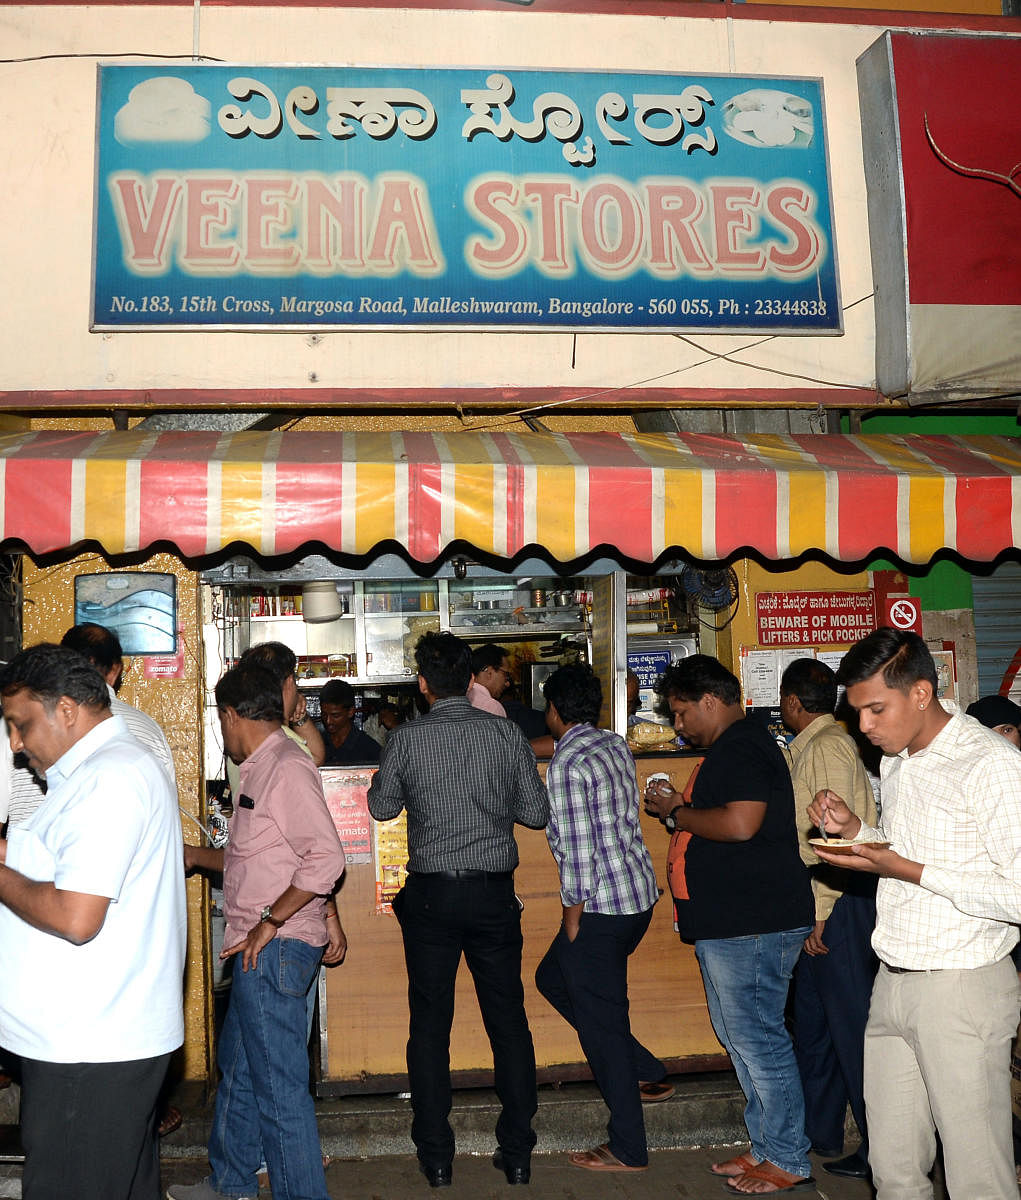 Veena Stores in Malleswaram closed temporarily last Saturday. 